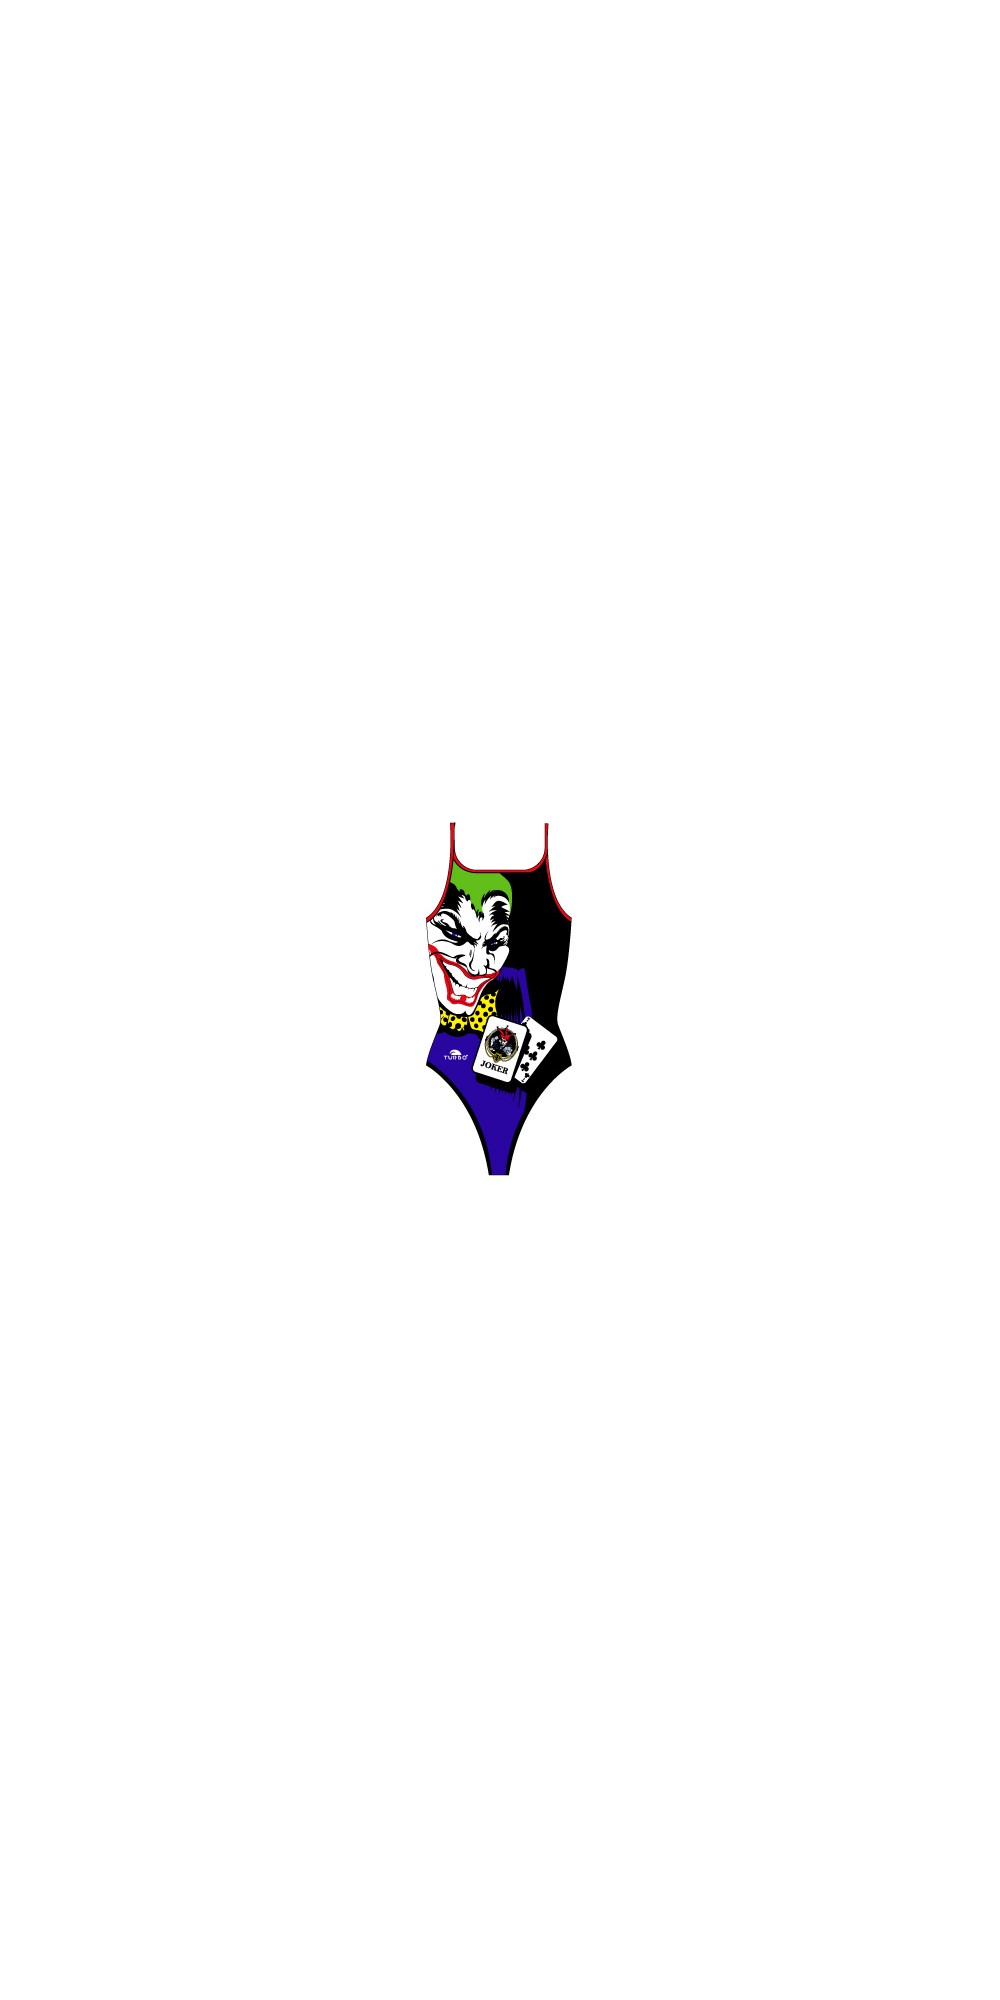 New Joker